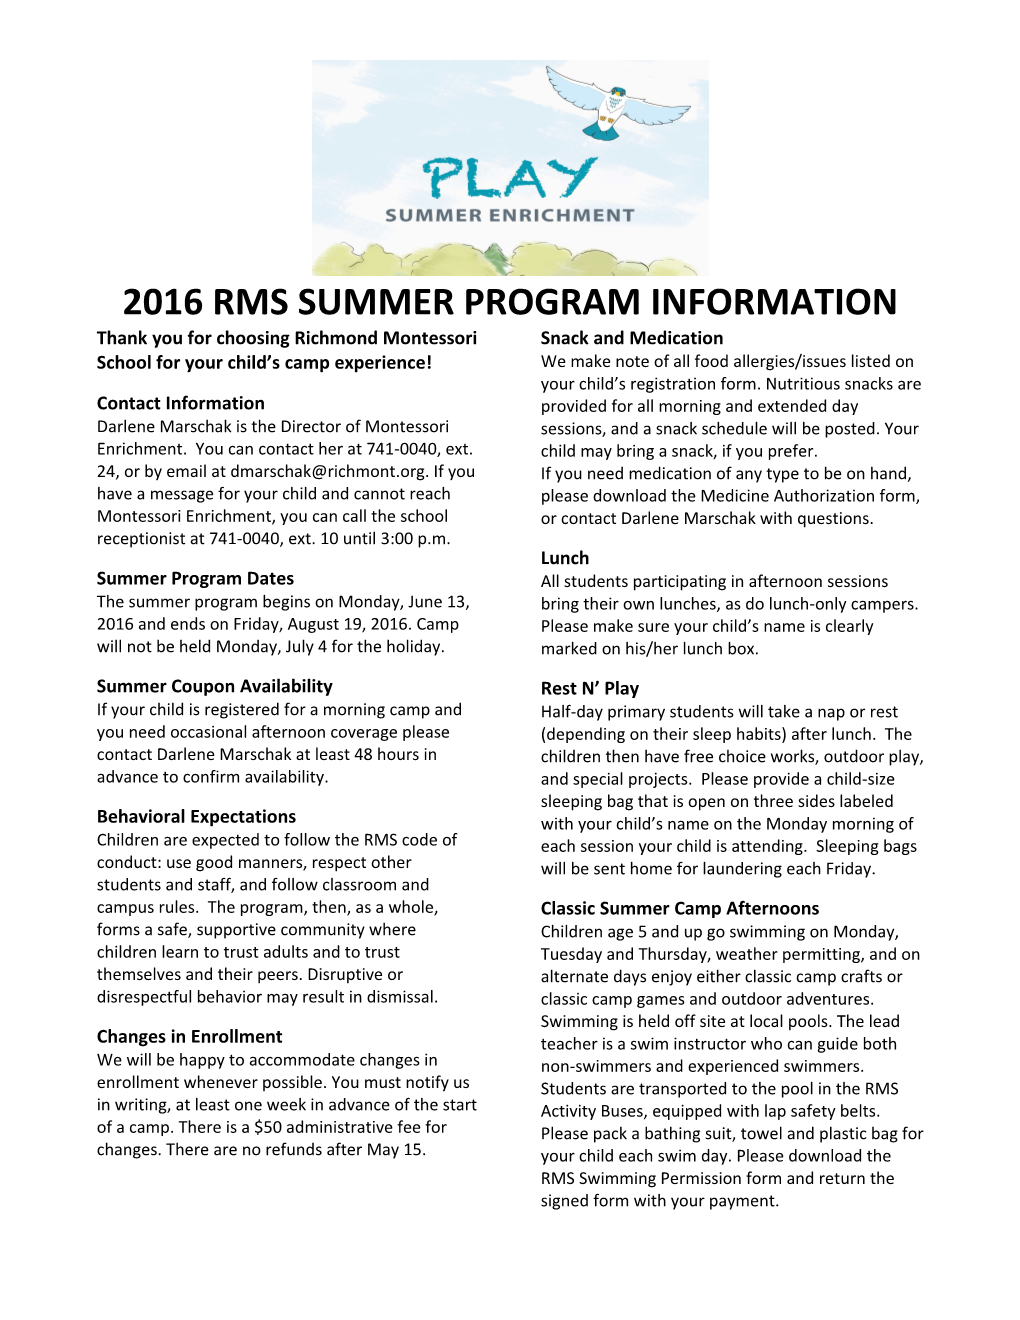 2016 Rms Summer Program Information